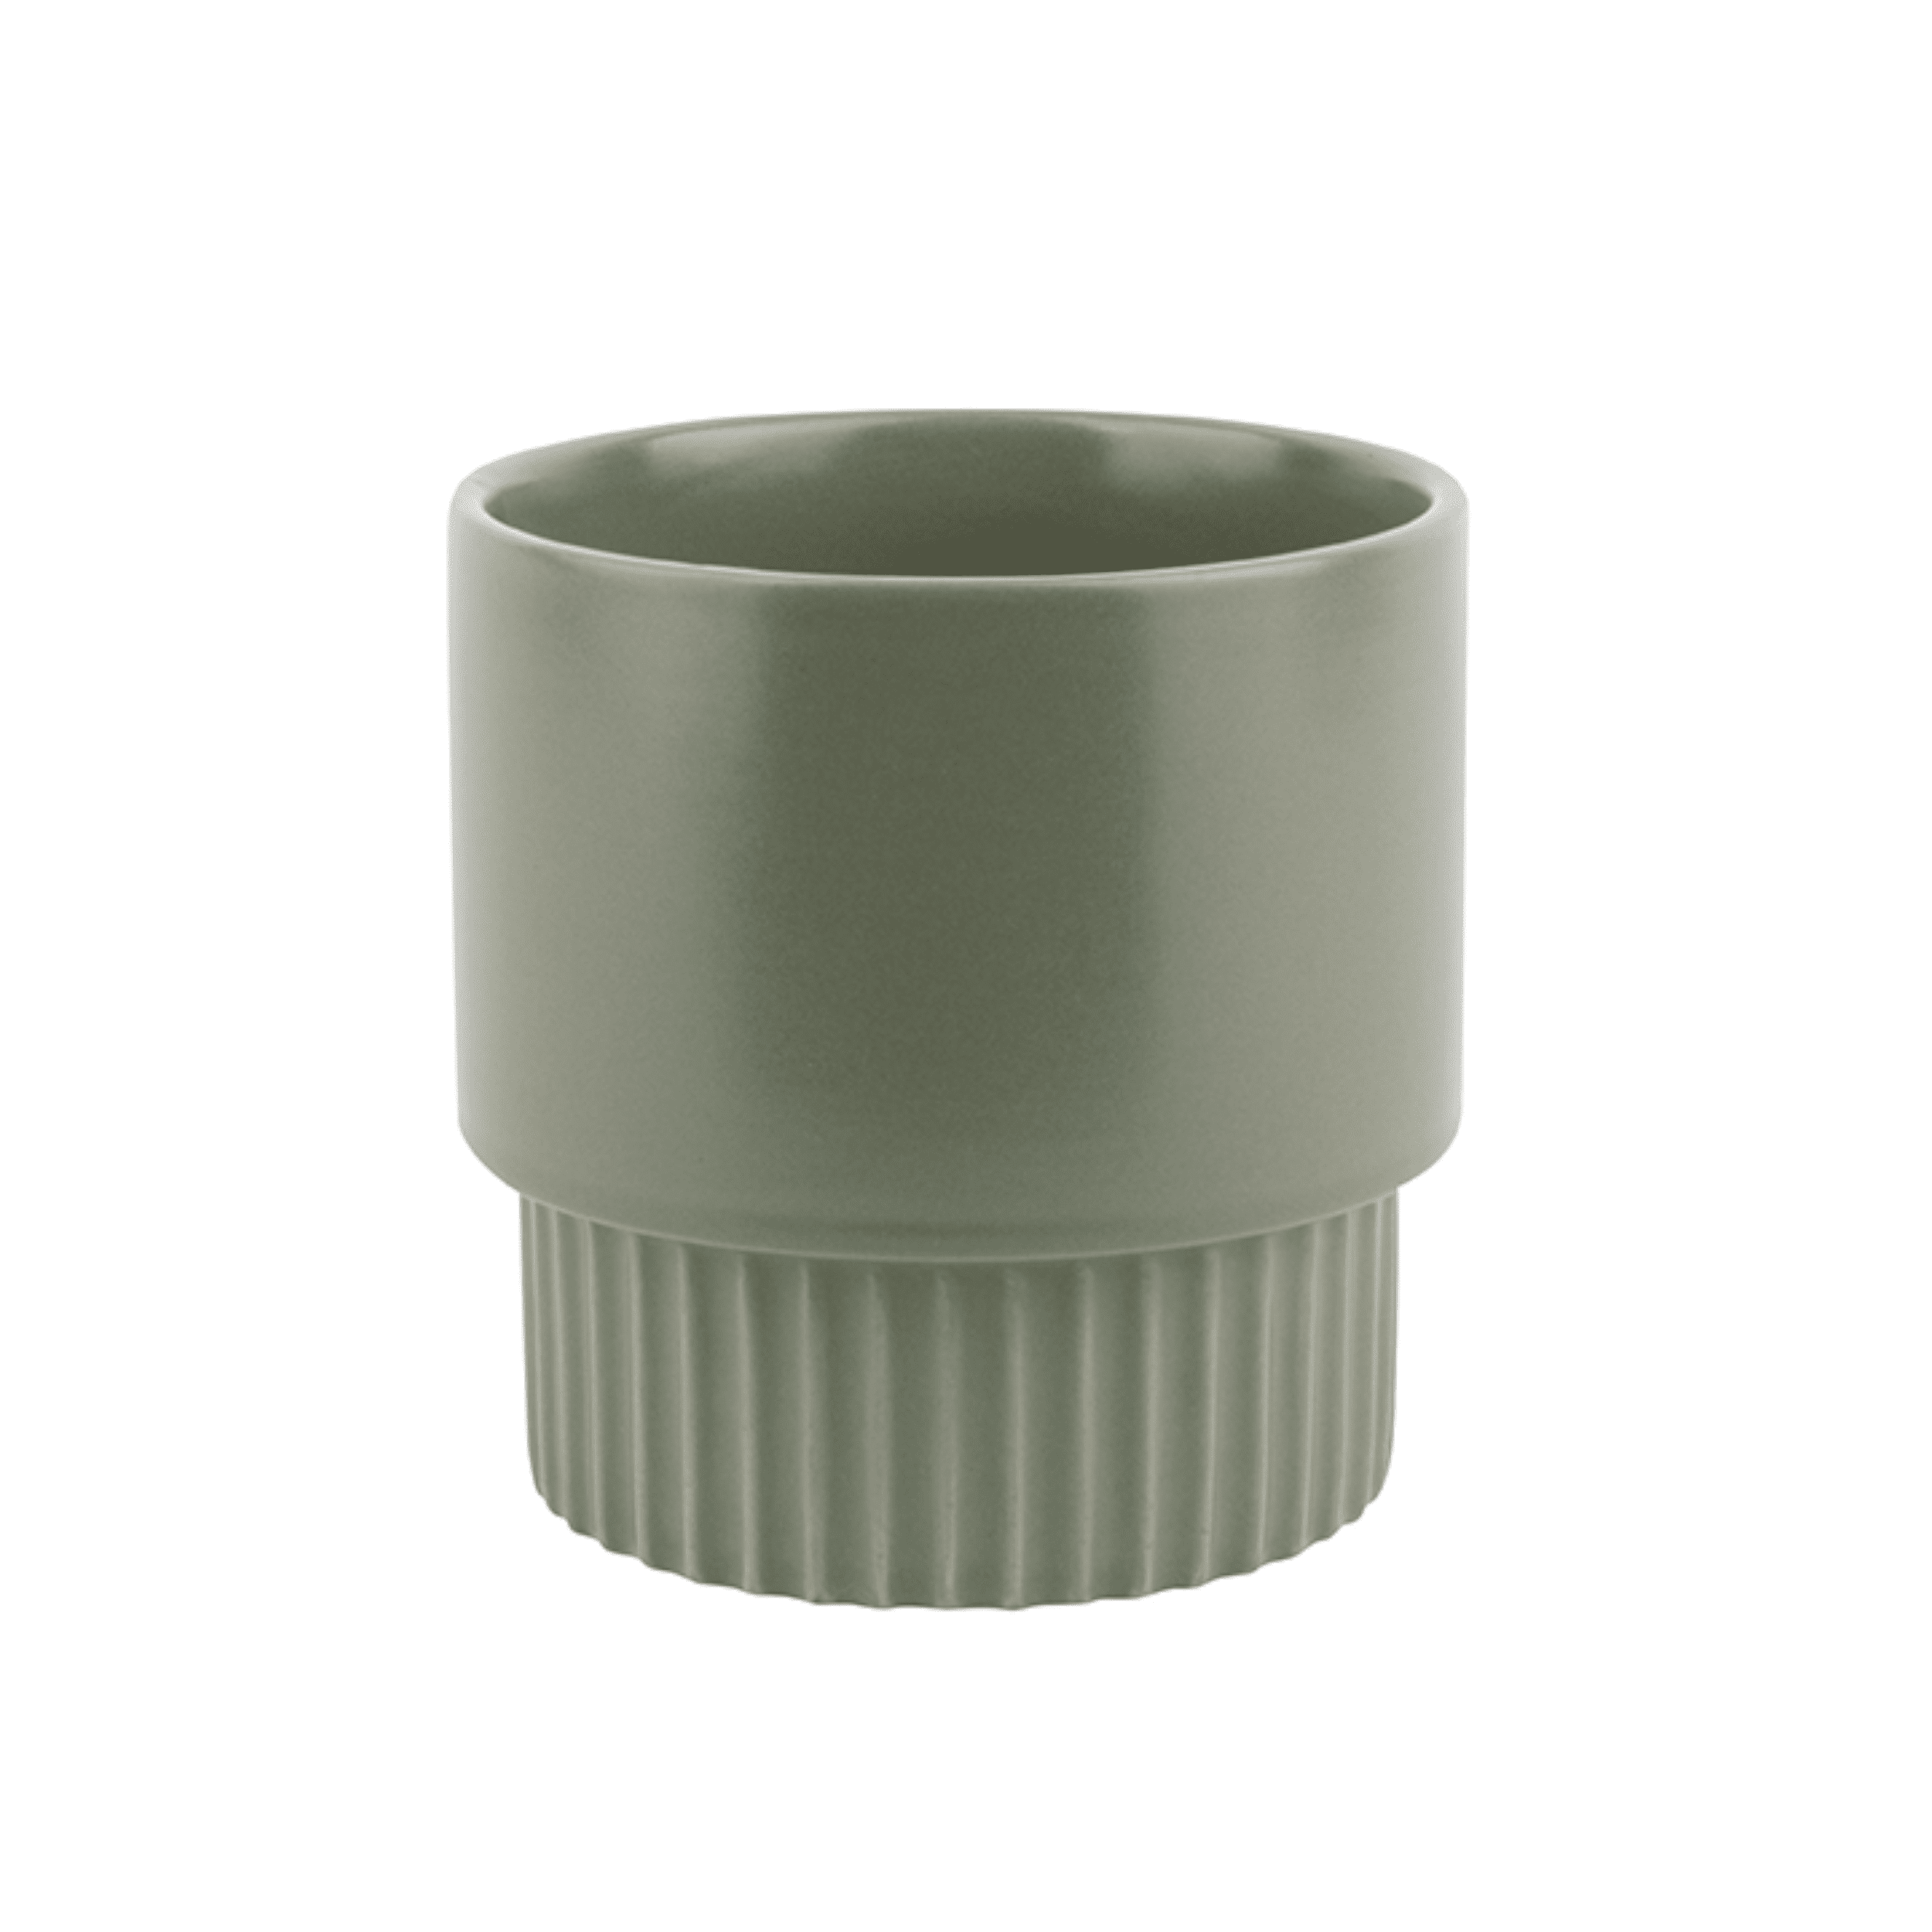 Keramik-Blumentopf Ribbed medium D13 cm jadegrau